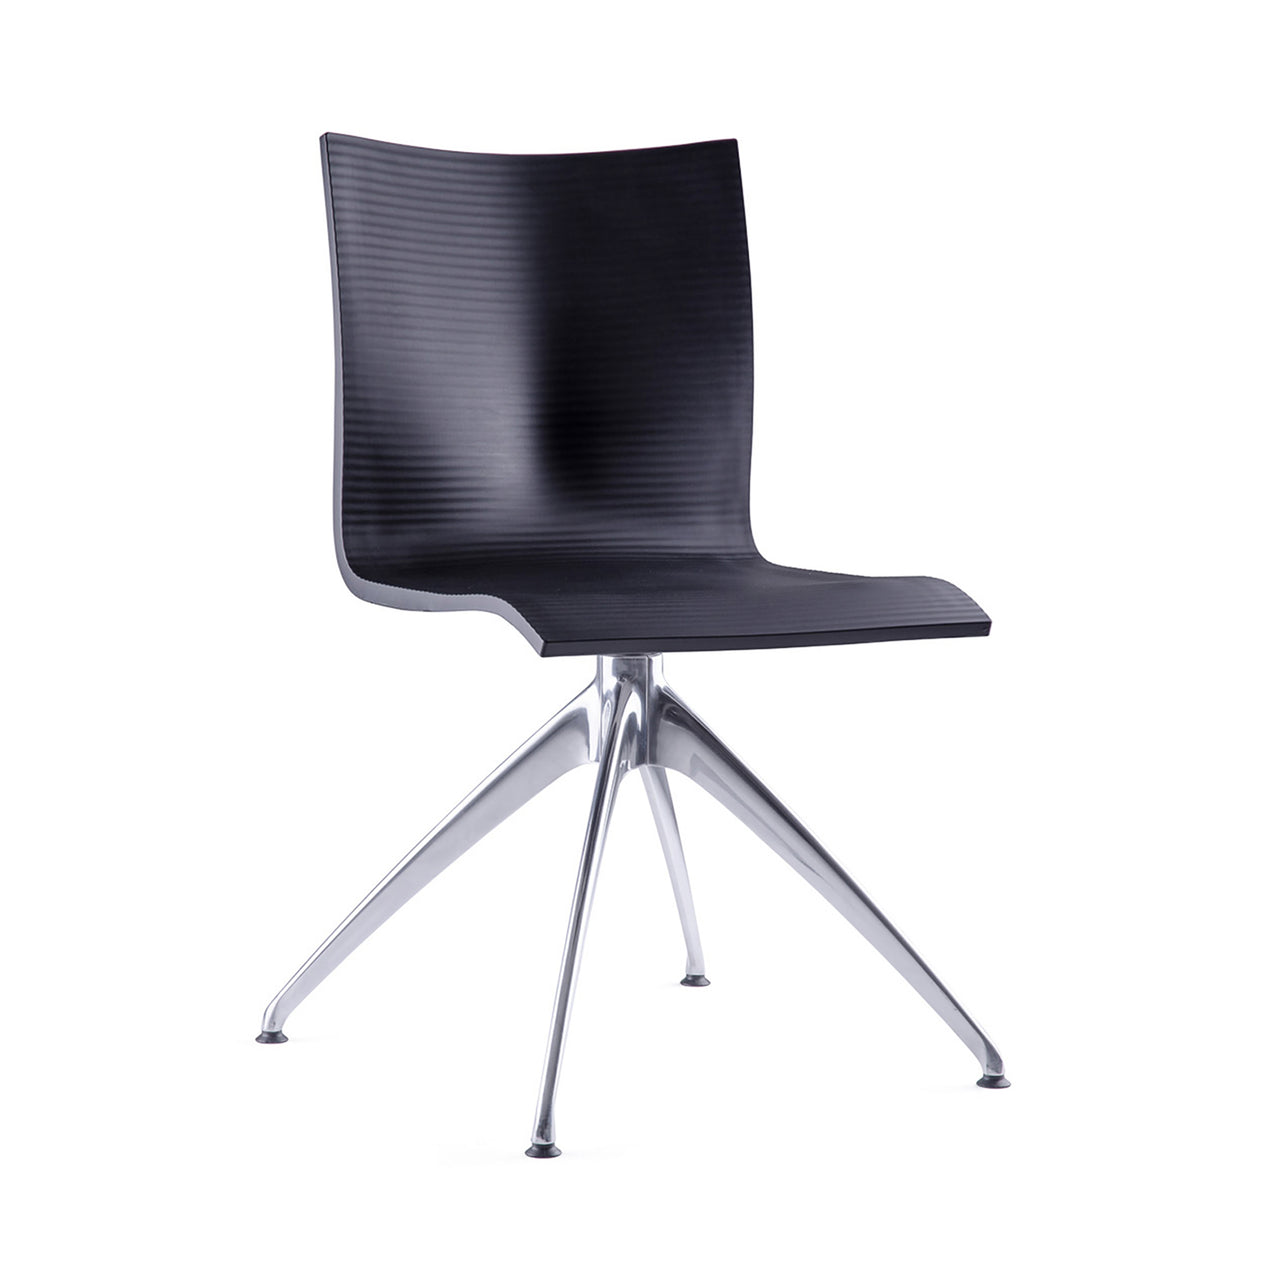 Chairik XL 136 Chair: 4-Star Base + Pur - Black + Aluminium